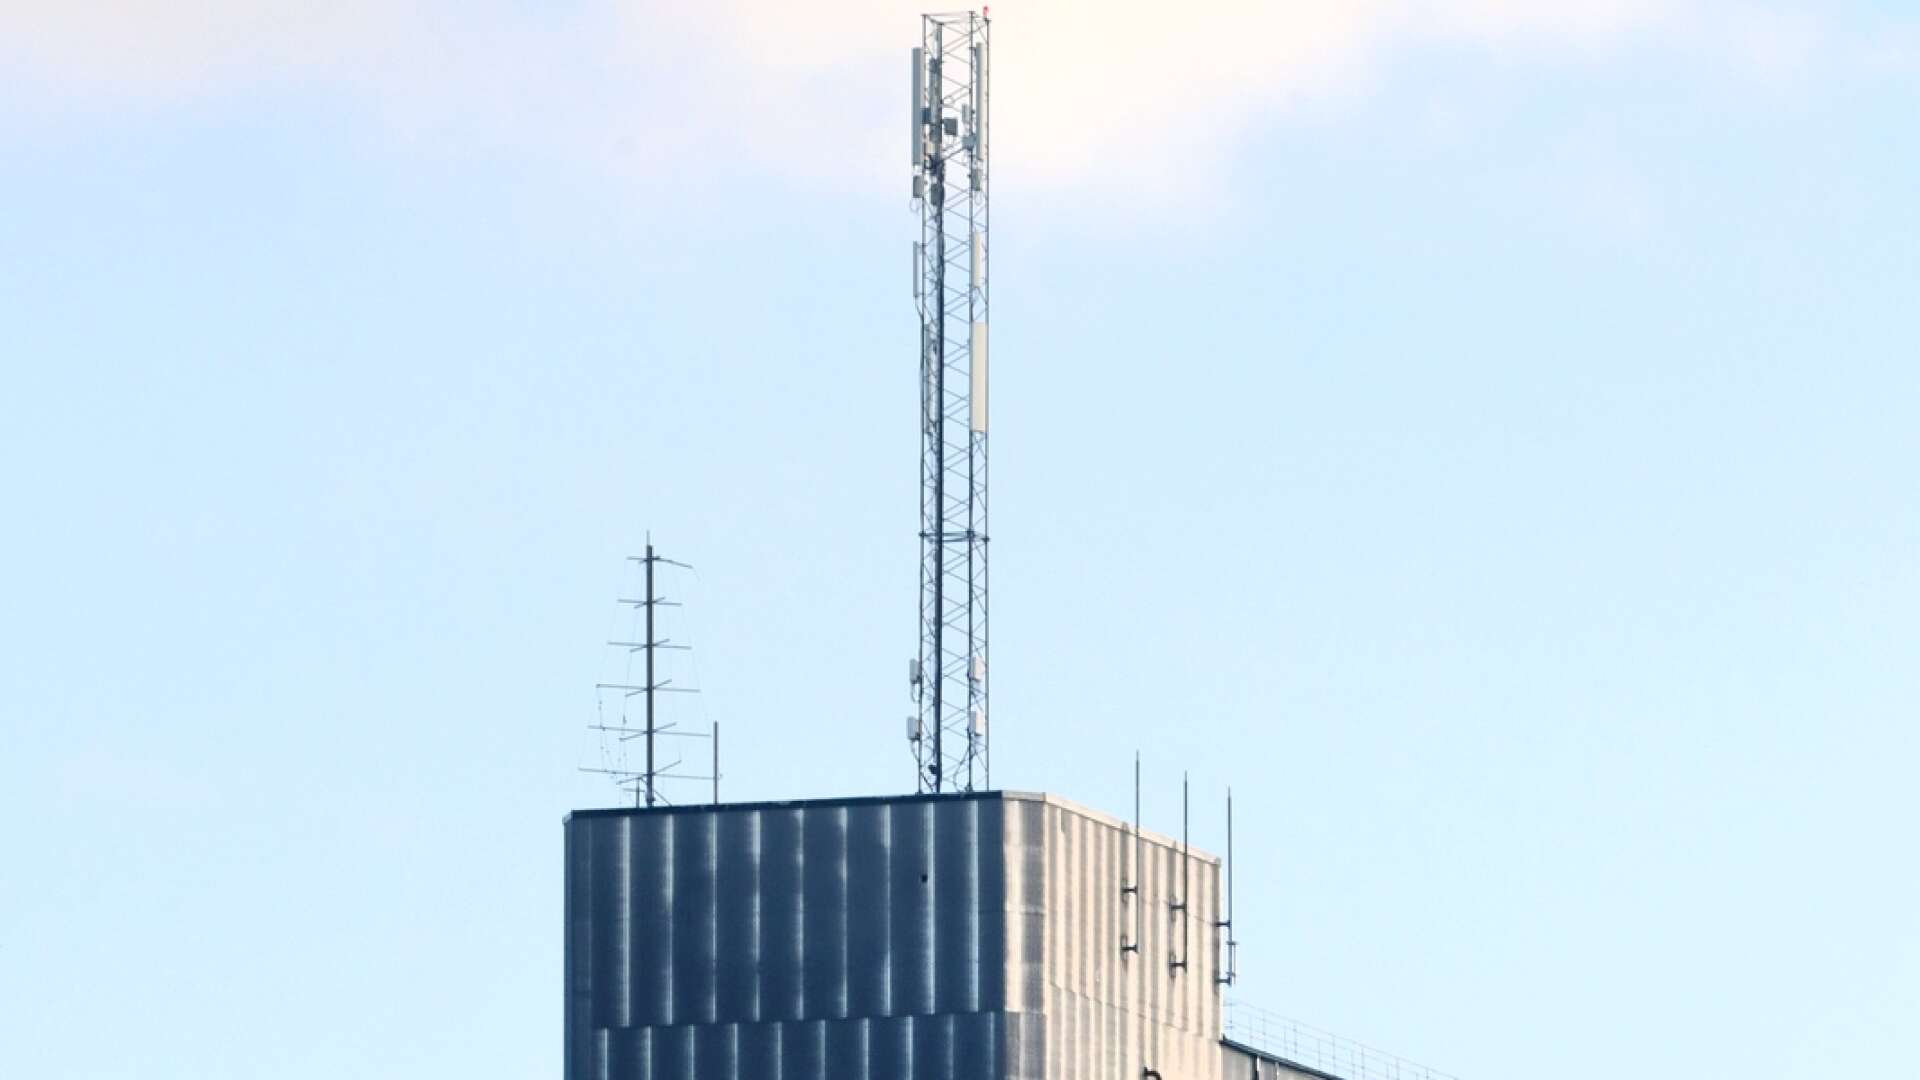 Mobilmasten på silon i Hjo är en av flera master i kommunen som utrustats med ny teknik och 5G-sändare i höst. Silomasten förser Hjo tätort med 5G-täckning från Telia. 